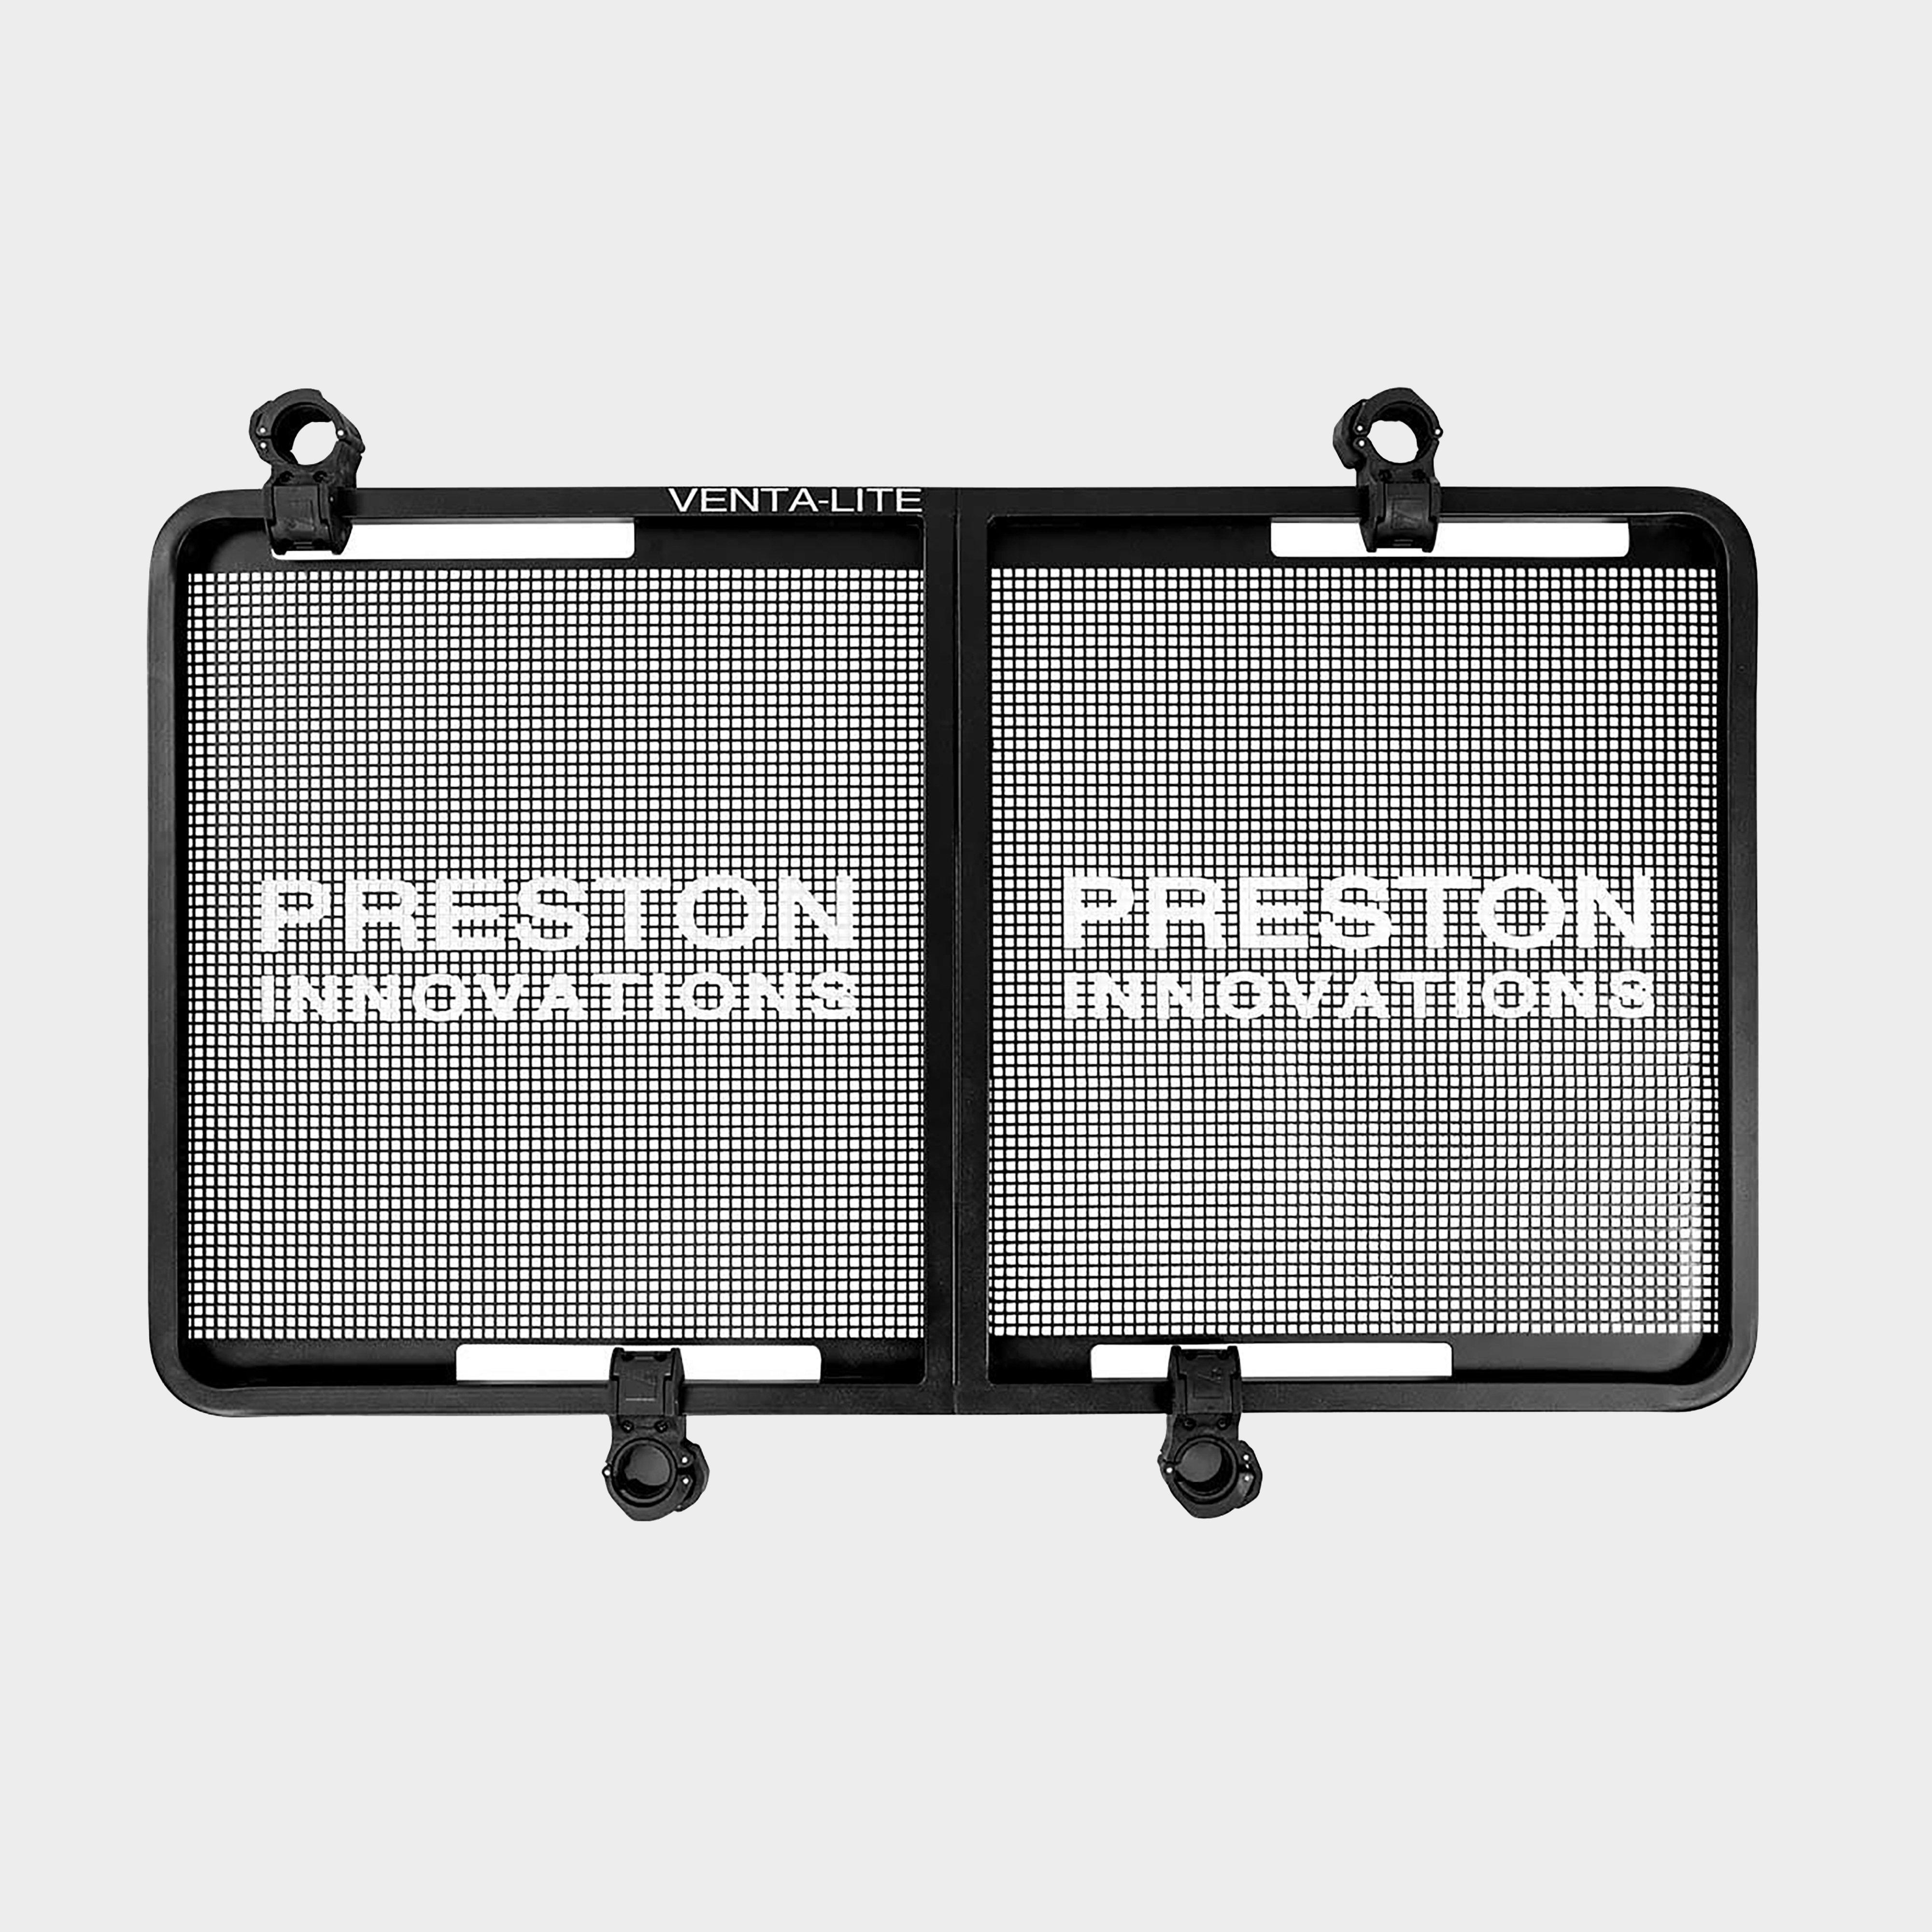  PRESTON INNOVATION Preston Offbox 36 Ventalite Side Tray XL, Silver